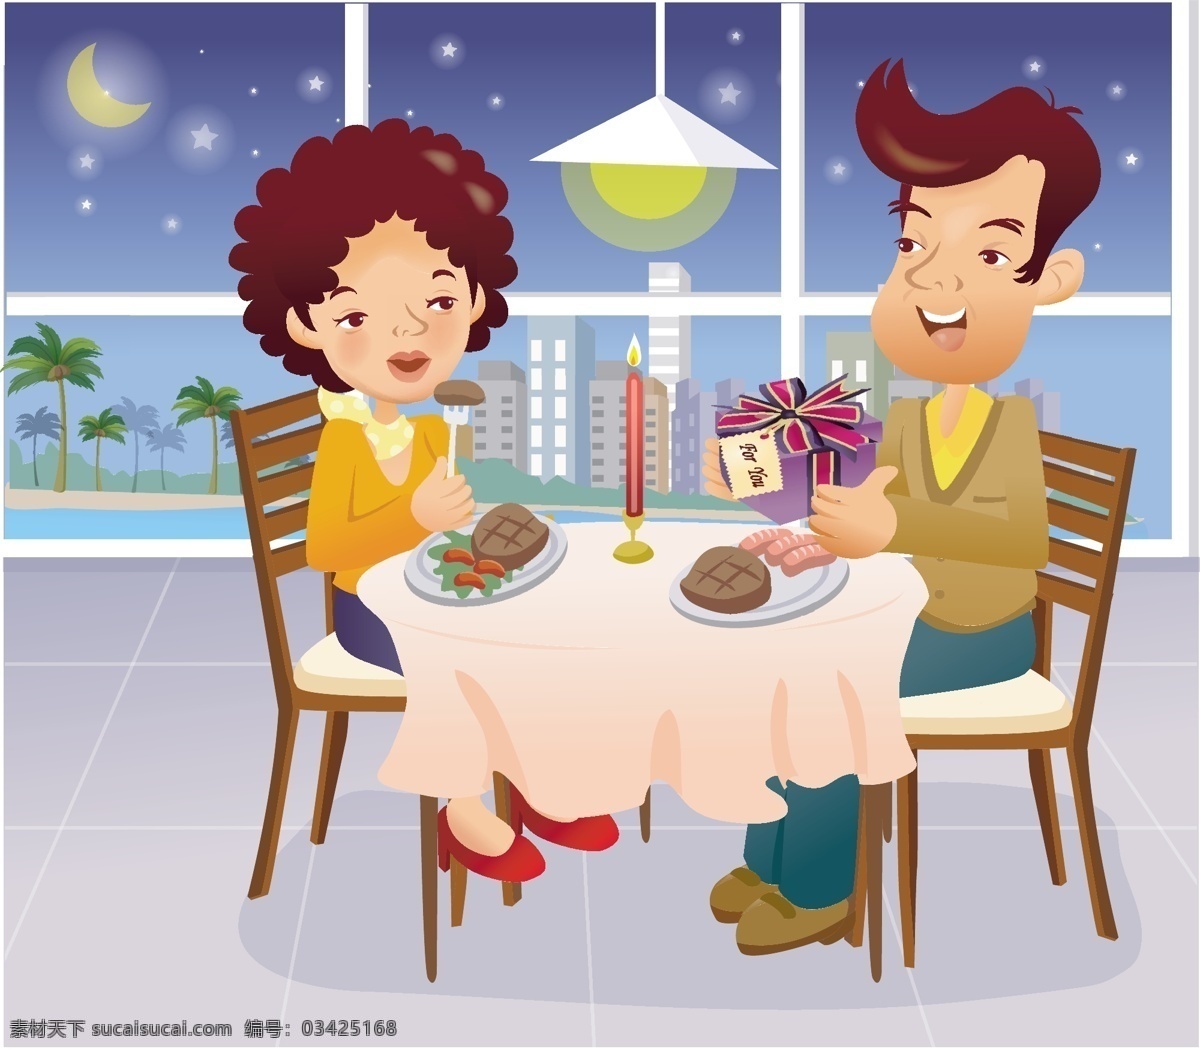 吃 晚餐 俩 人 夫妻 家庭人物 矢量图 窗外夜景 其他矢量图